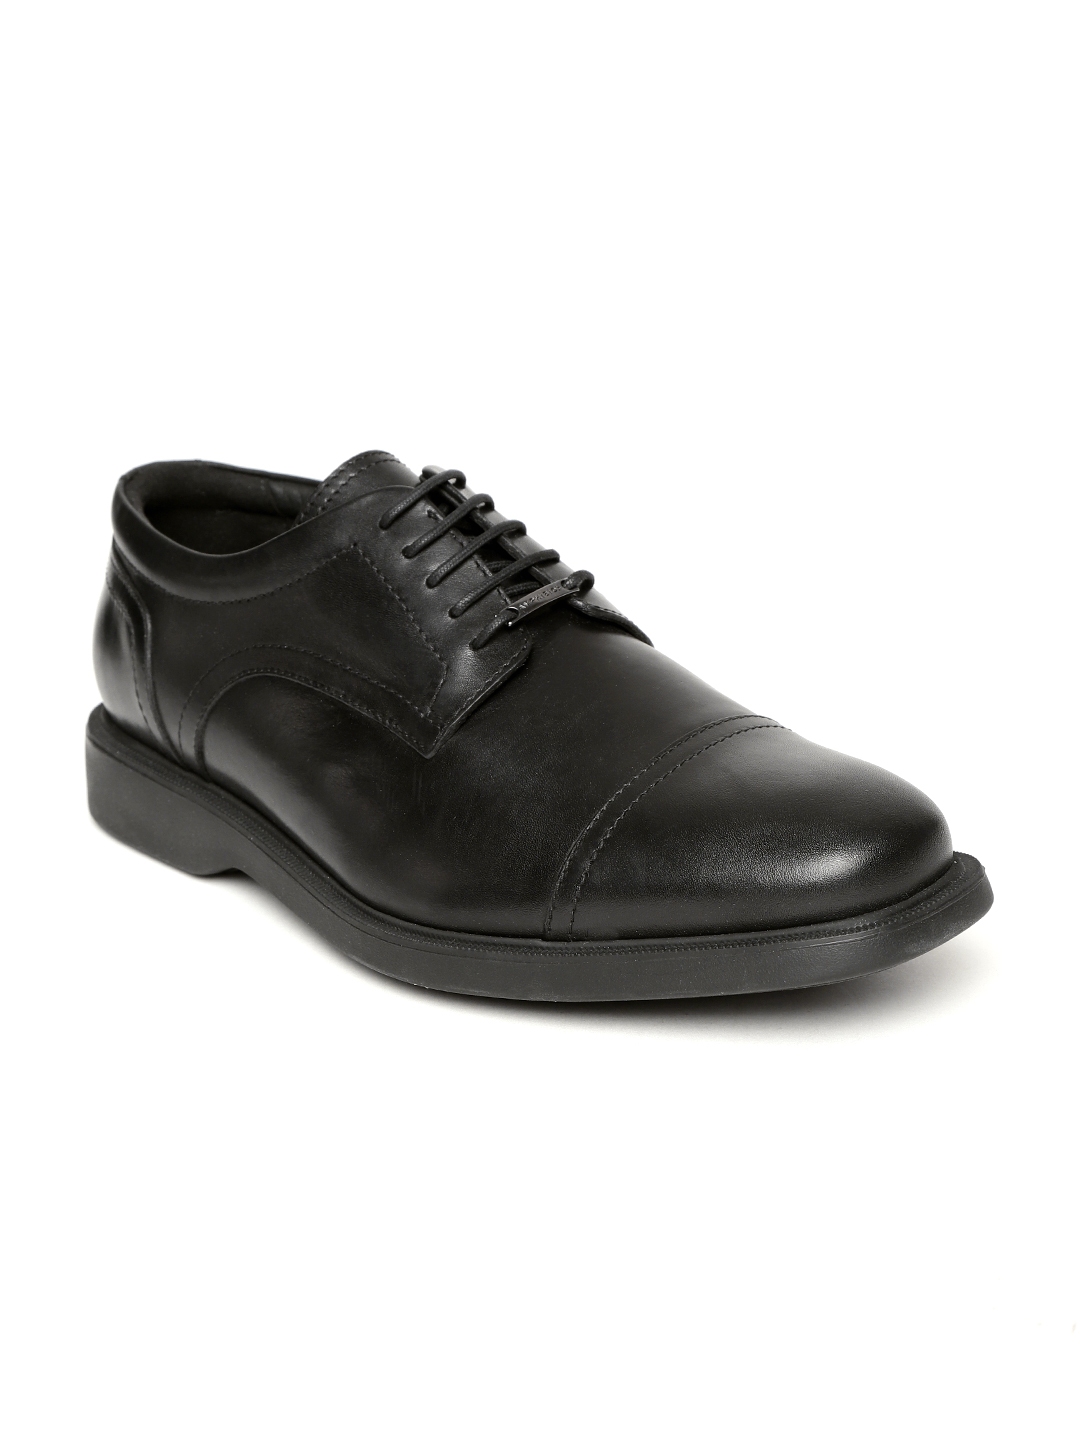 Buy Geox Men Black Leather Formal Derbys - Formal Shoes for Men ...